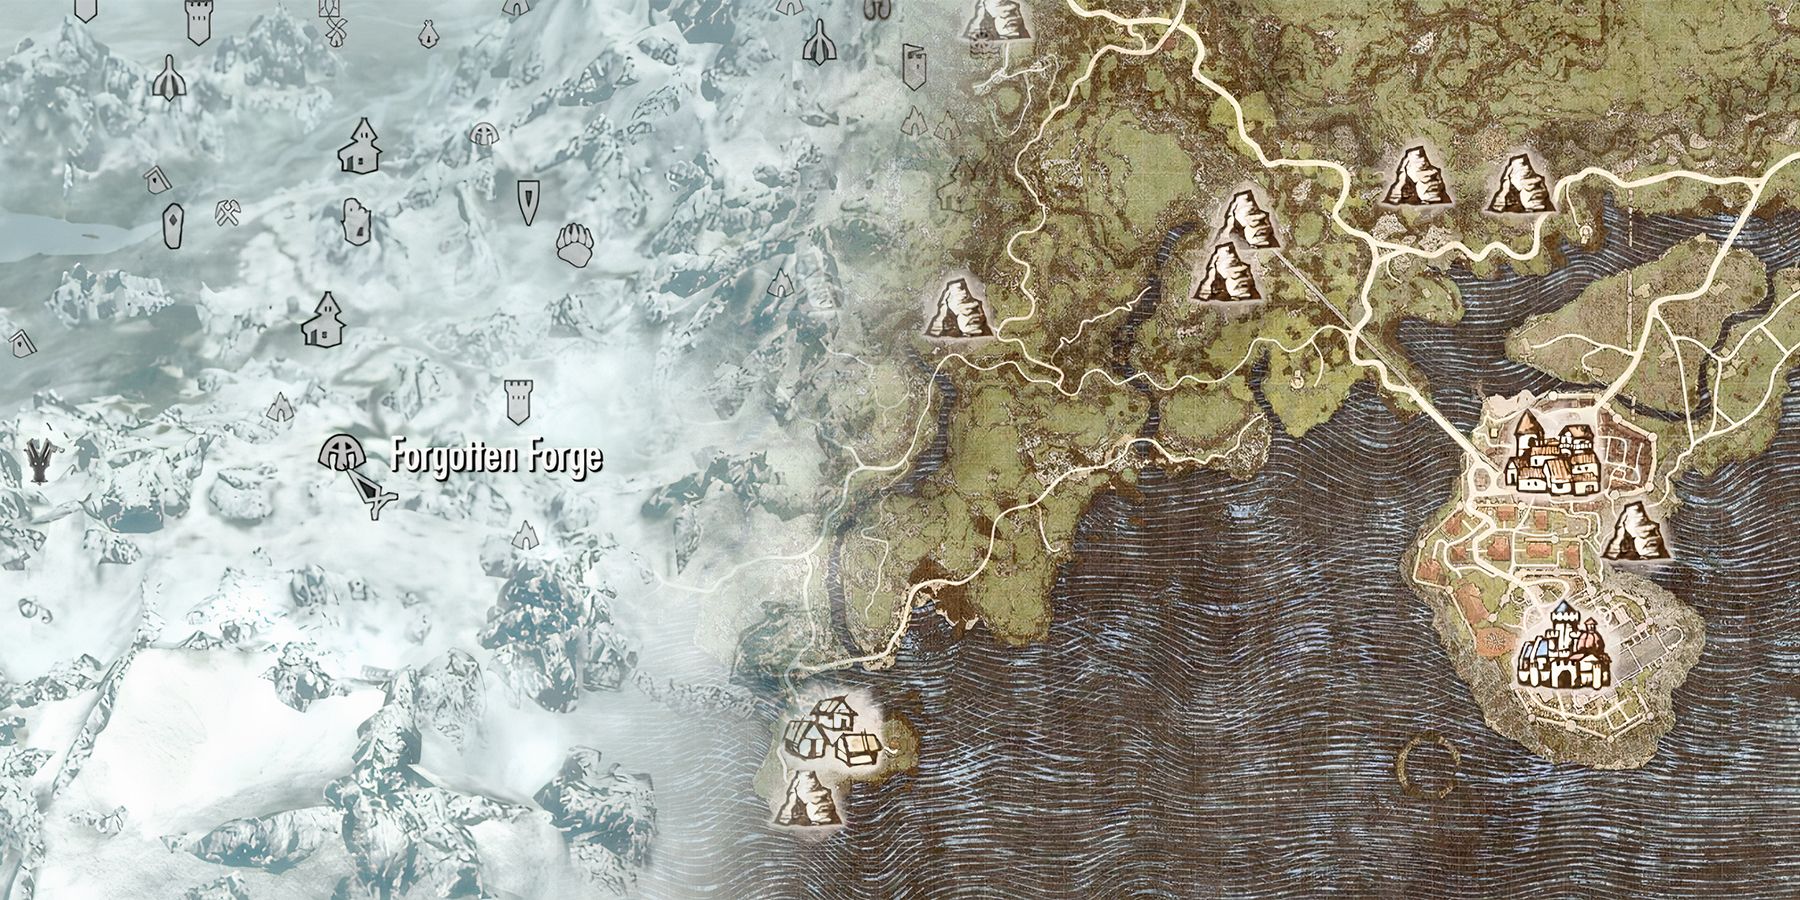 Skyrim map and Dragon's Dogma 2 map mashup